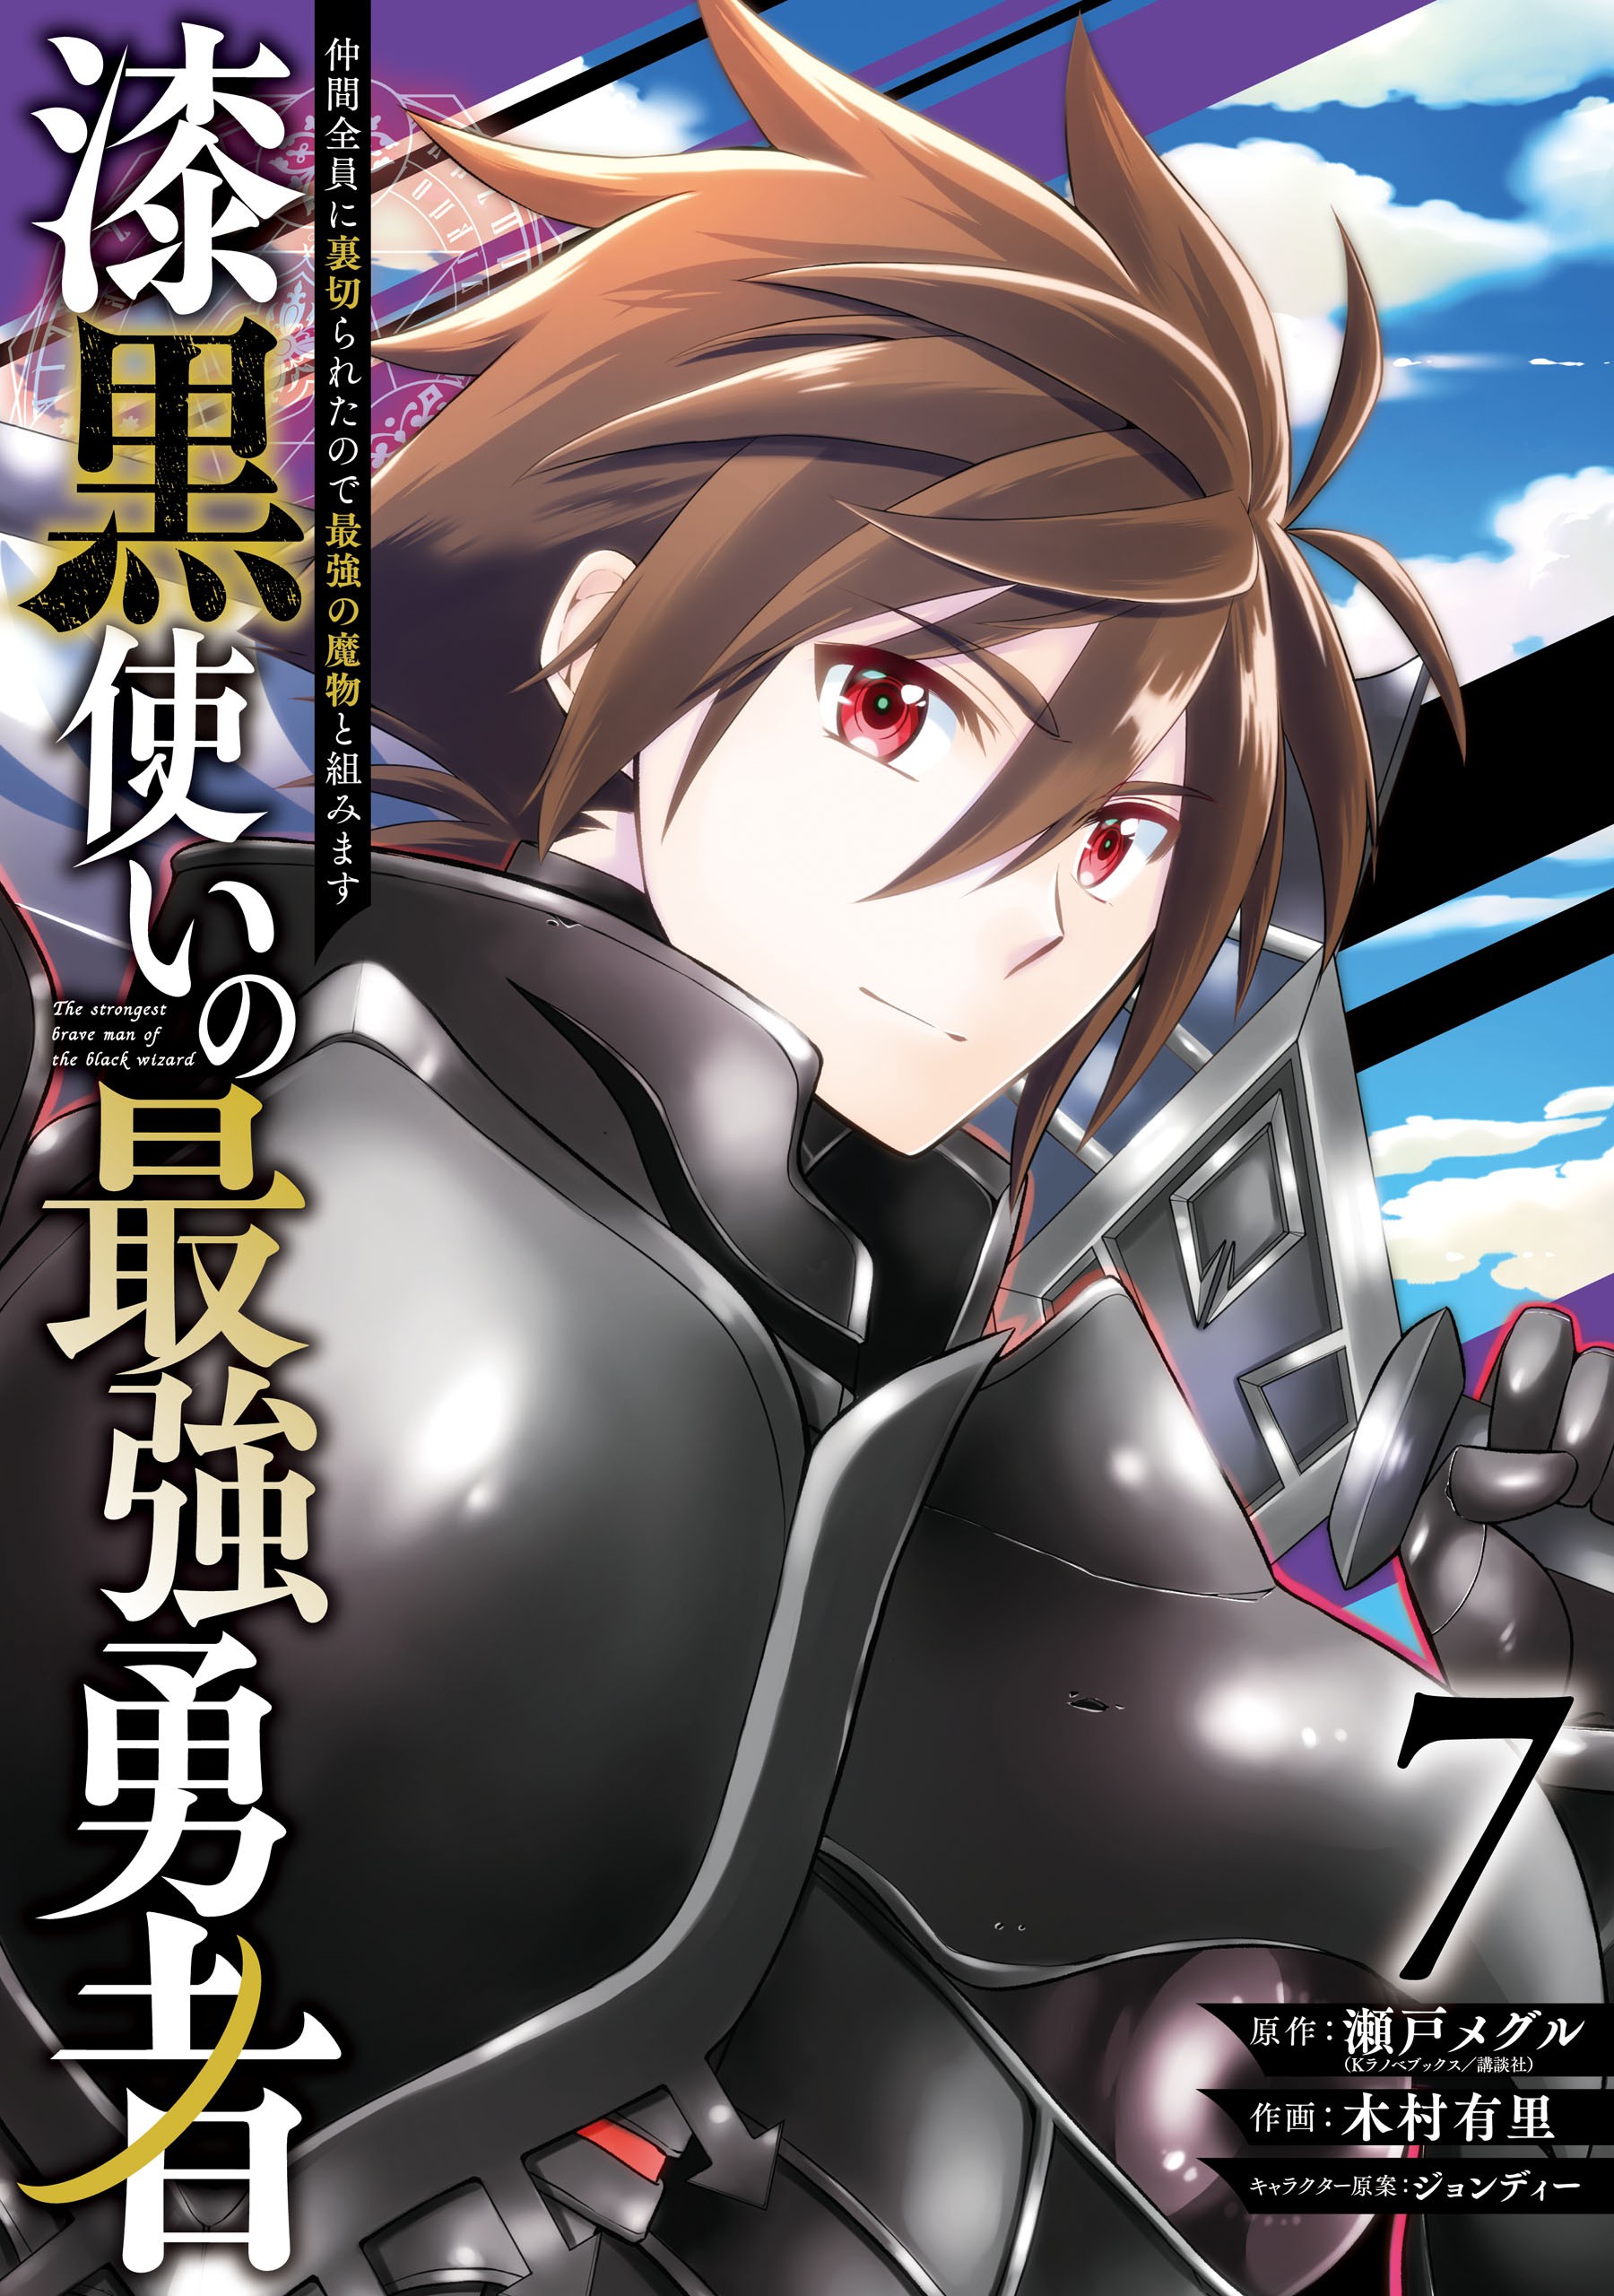 1  Chapter 6 - Saikyou de Saisoku no Mugen Level Up - MangaDex